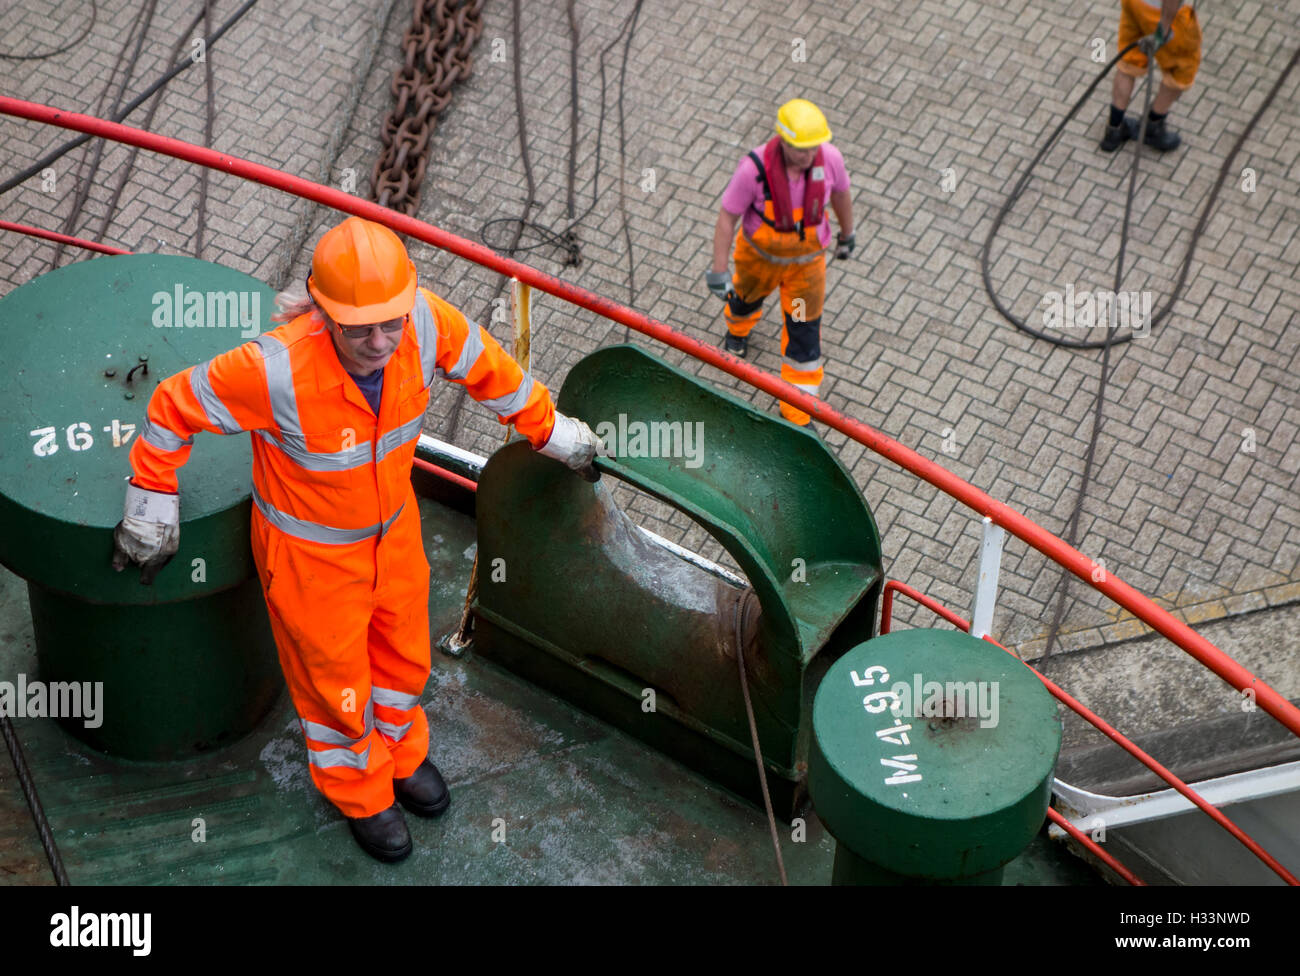 Schiffs-Crew-Mitglied in Orange insgesamt und Hafenarbeiter, die helfen, die Fähre im Hafen von Dock anlegen Stockfoto